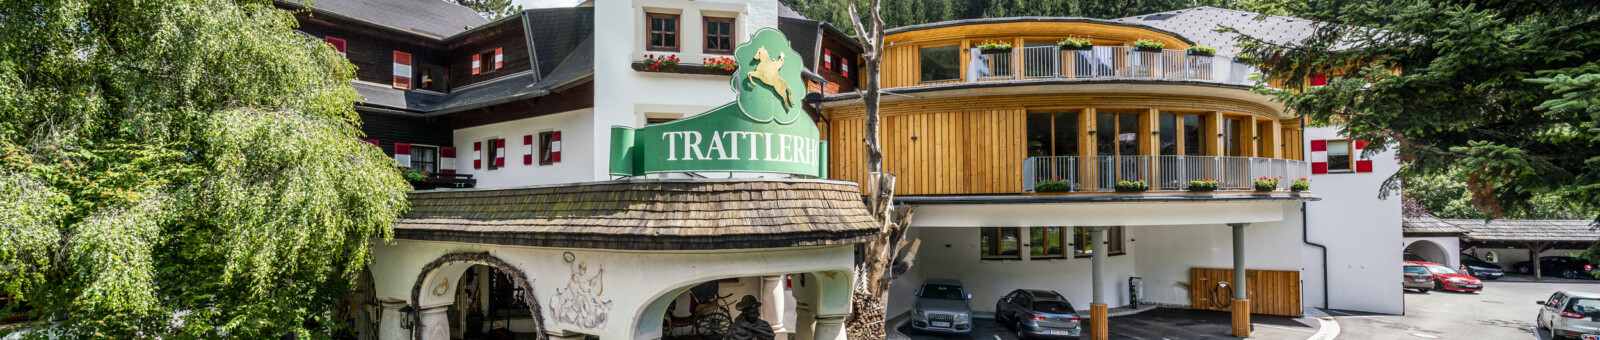     Hotel GUT Trattlerhof & Chalets, Bad Kleinkirchheim 